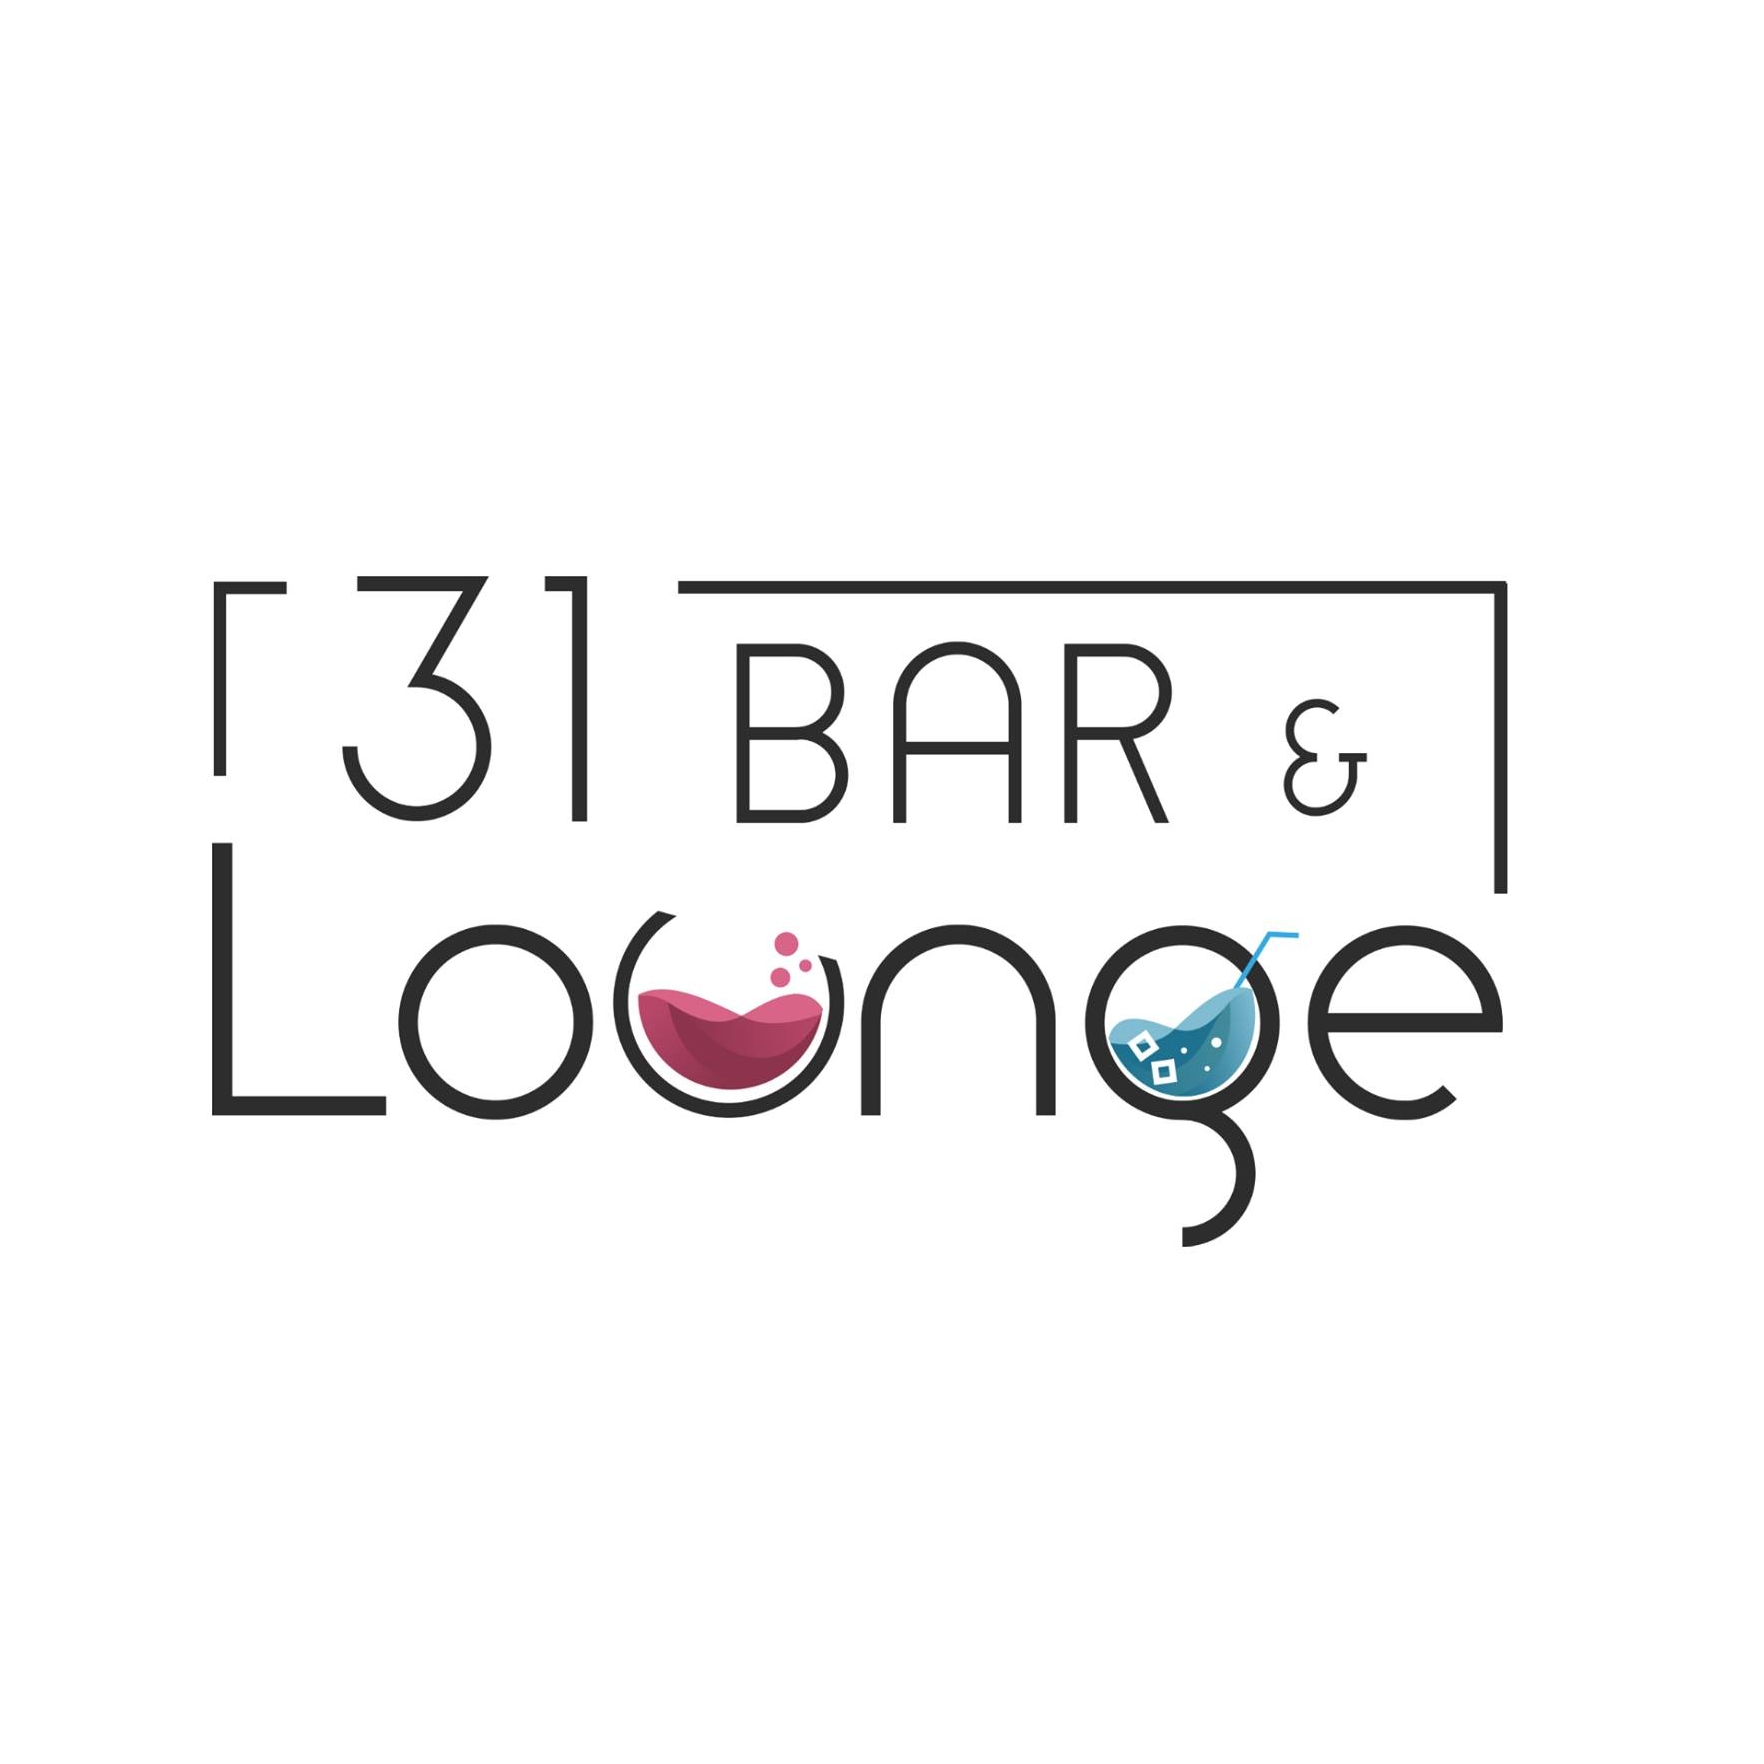 31 Bar & Lounge 